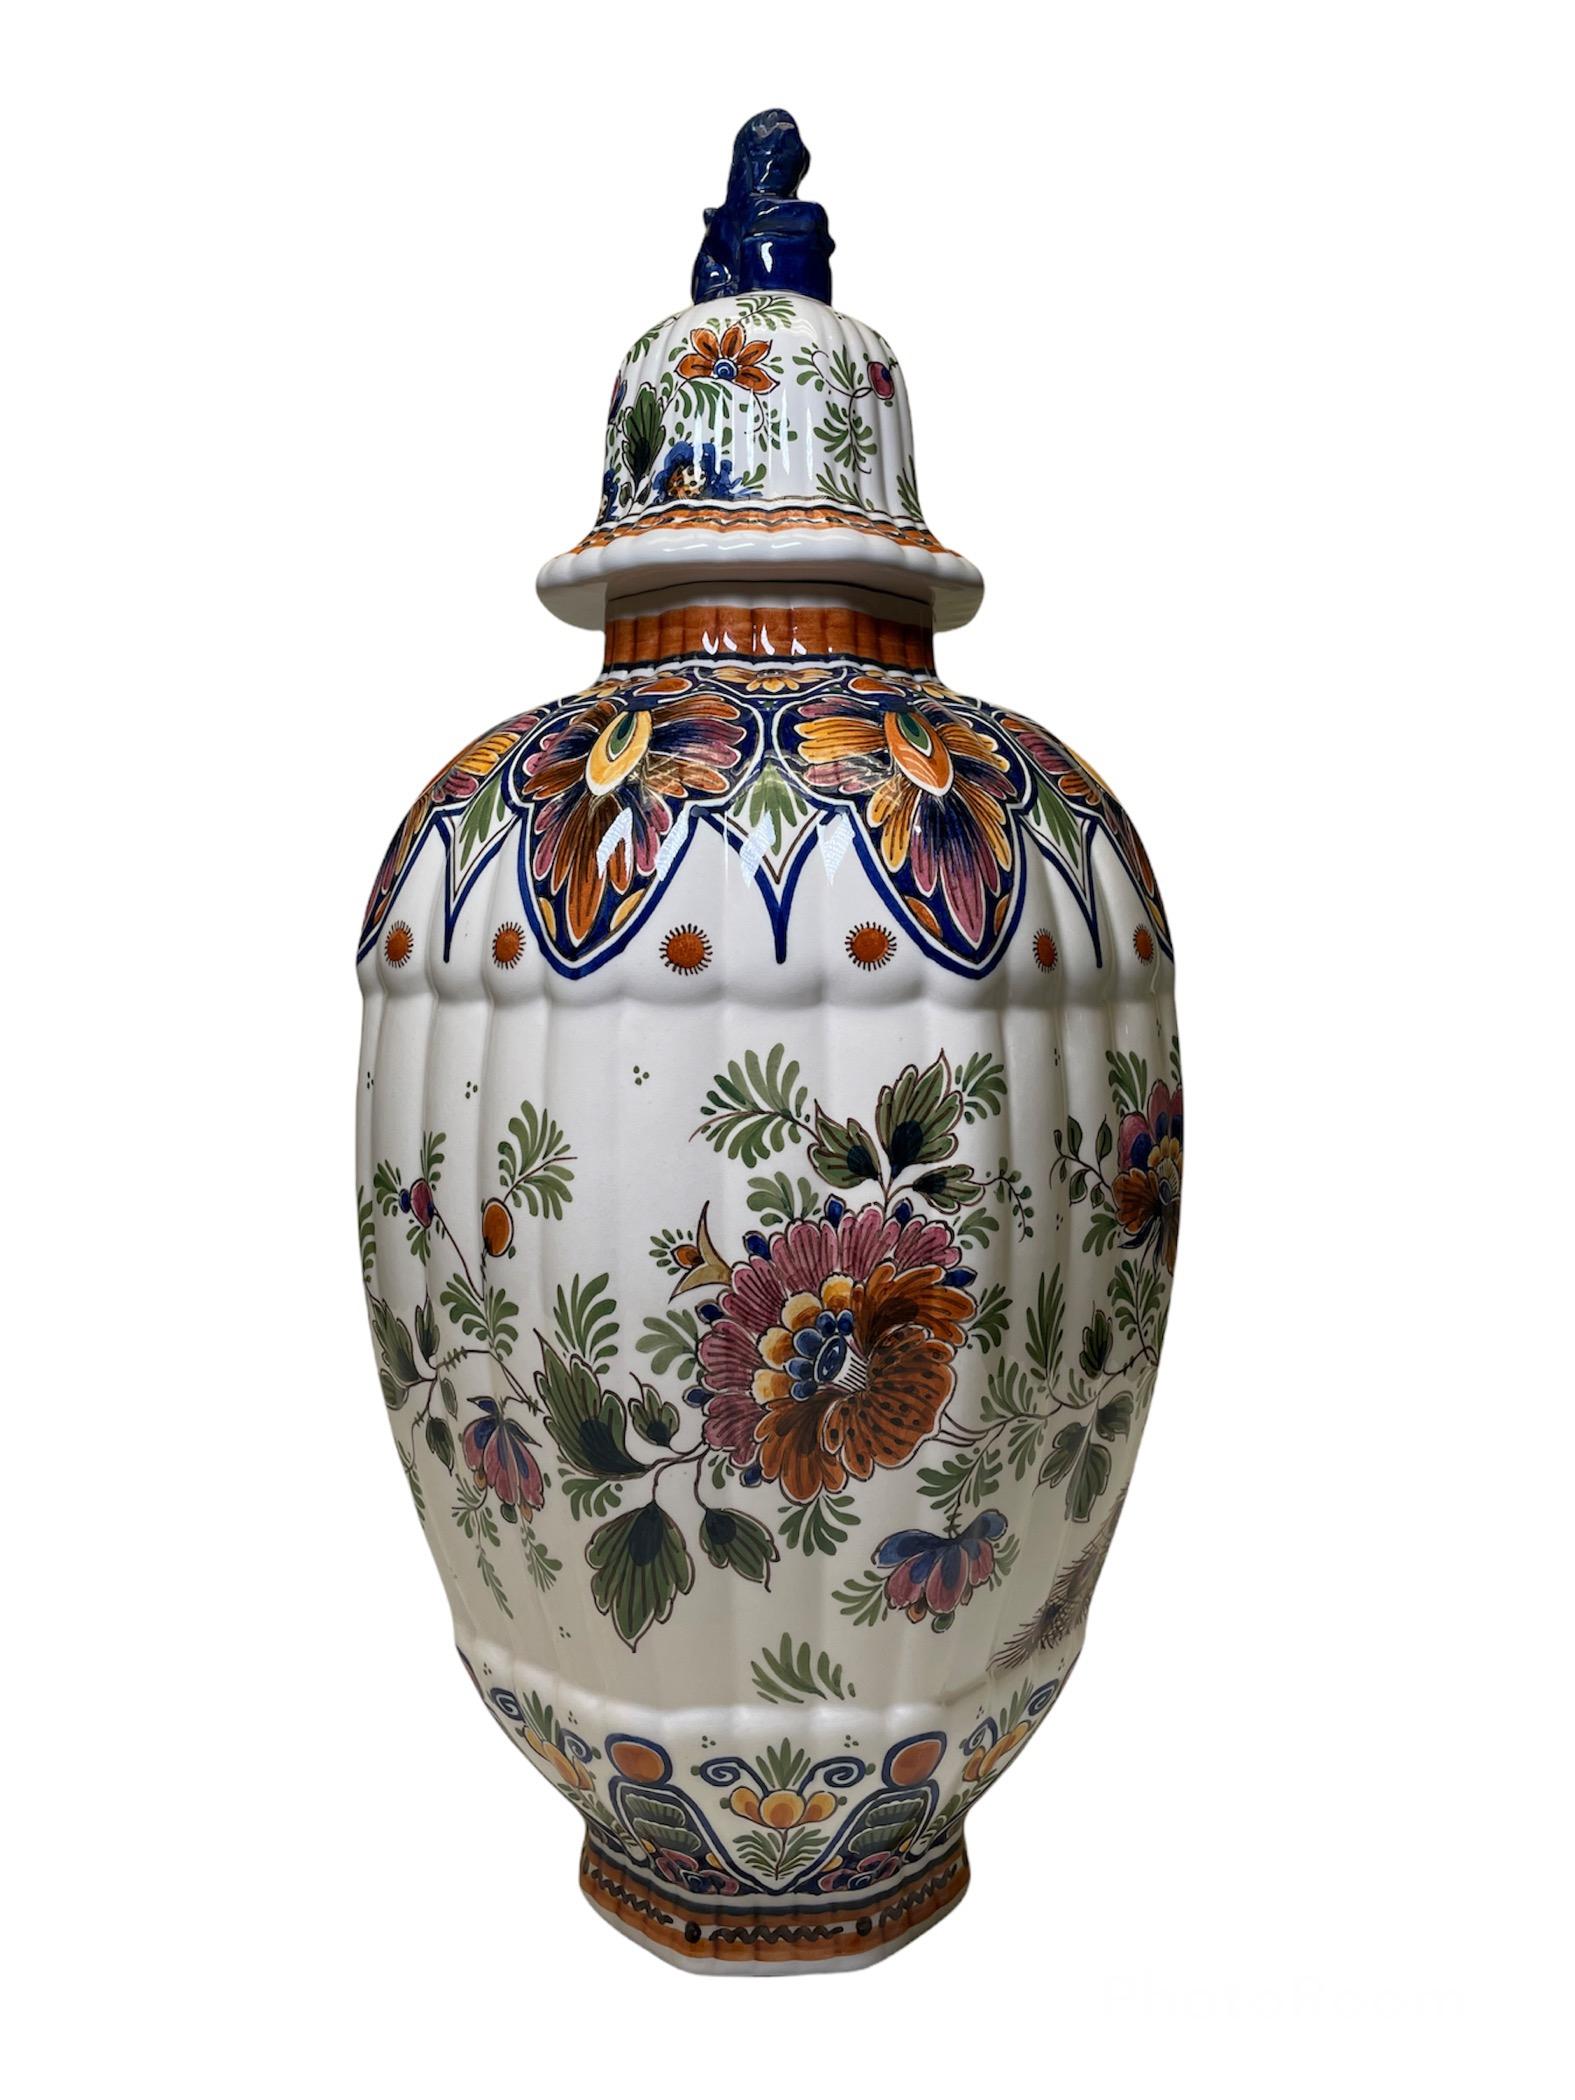 20th Century Delft Hand Painted Porcelain Lidded Urn Vase/Ginger Jar